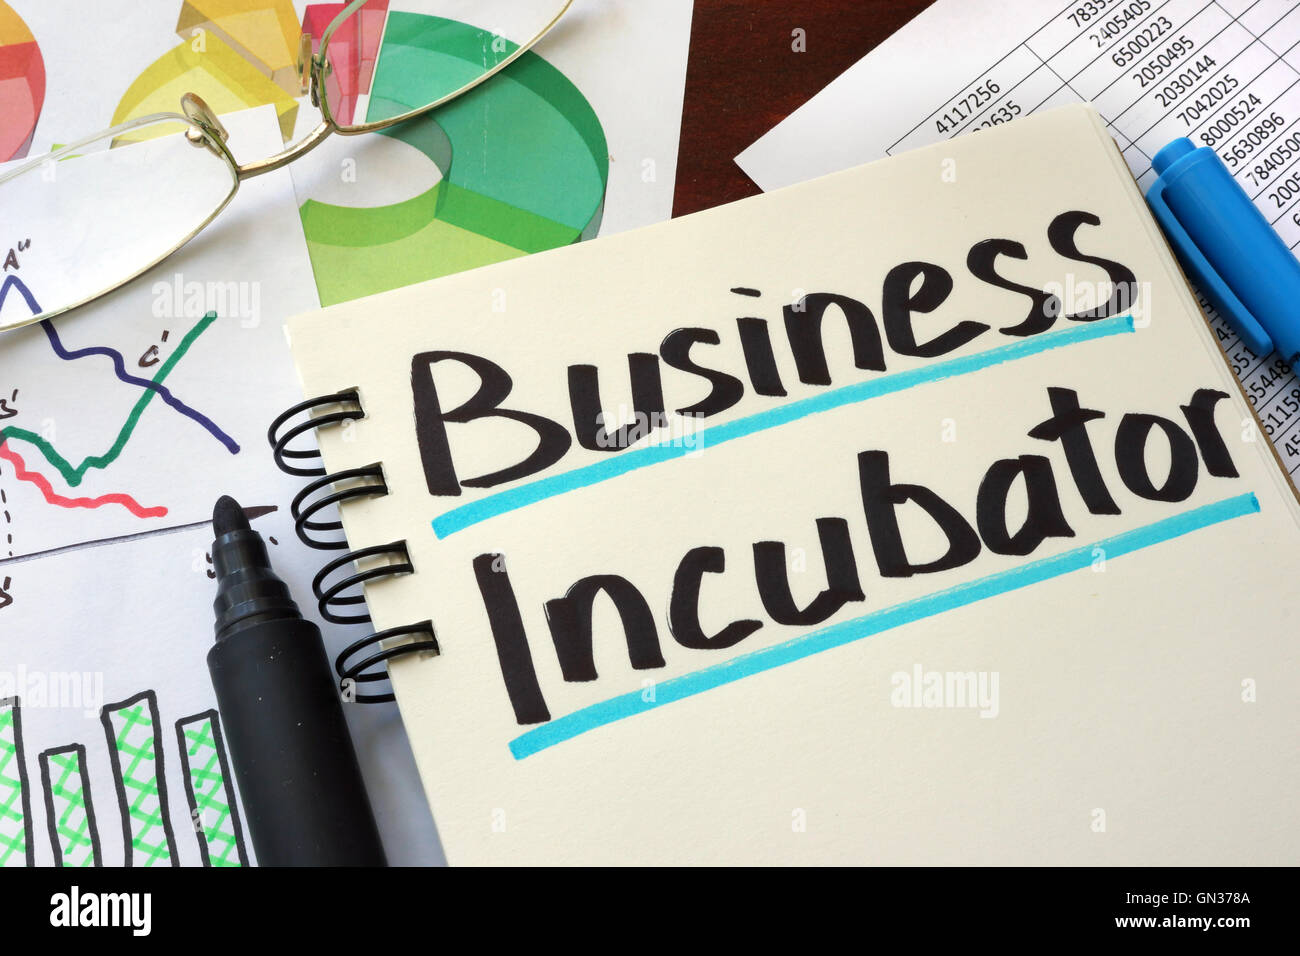 Business-Inkubator auf einem Notizblock mit Marker geschrieben. Stockfoto